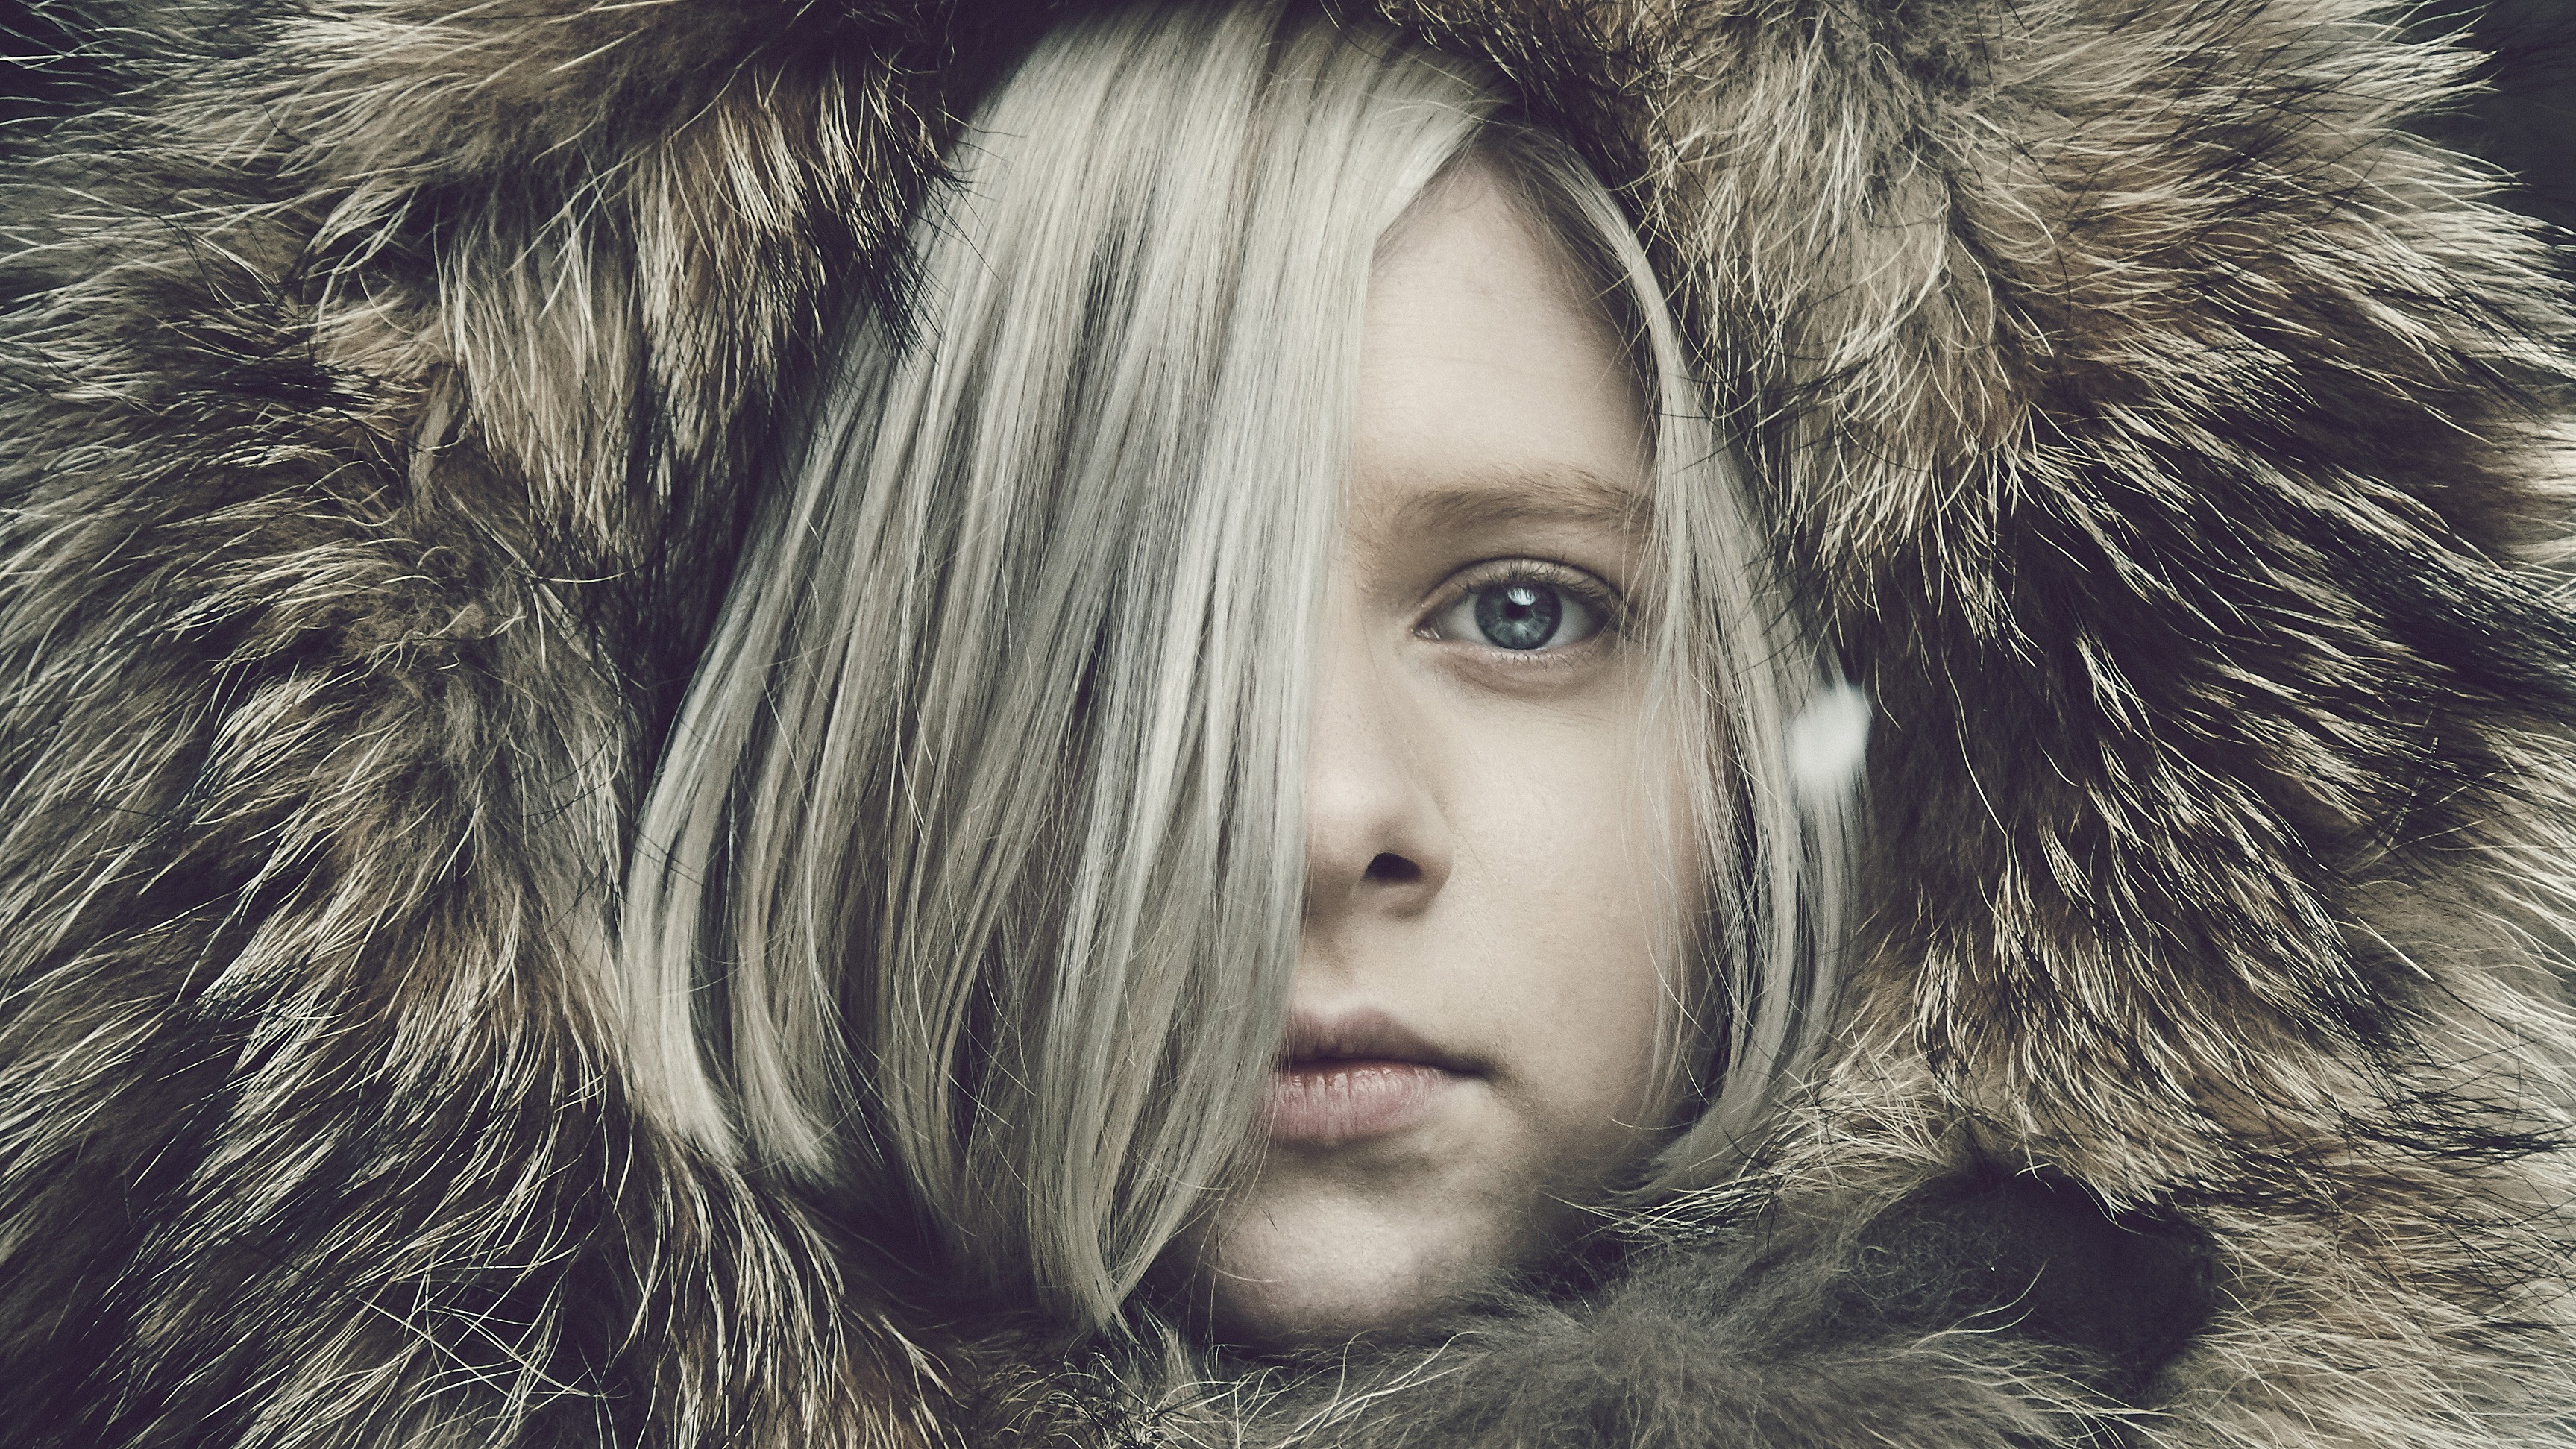 Women Aurora Aksnes Musician Singer White Hair Short Hair Looking At Viewer Blue Eyes Fur Coats Hair 3454x1943